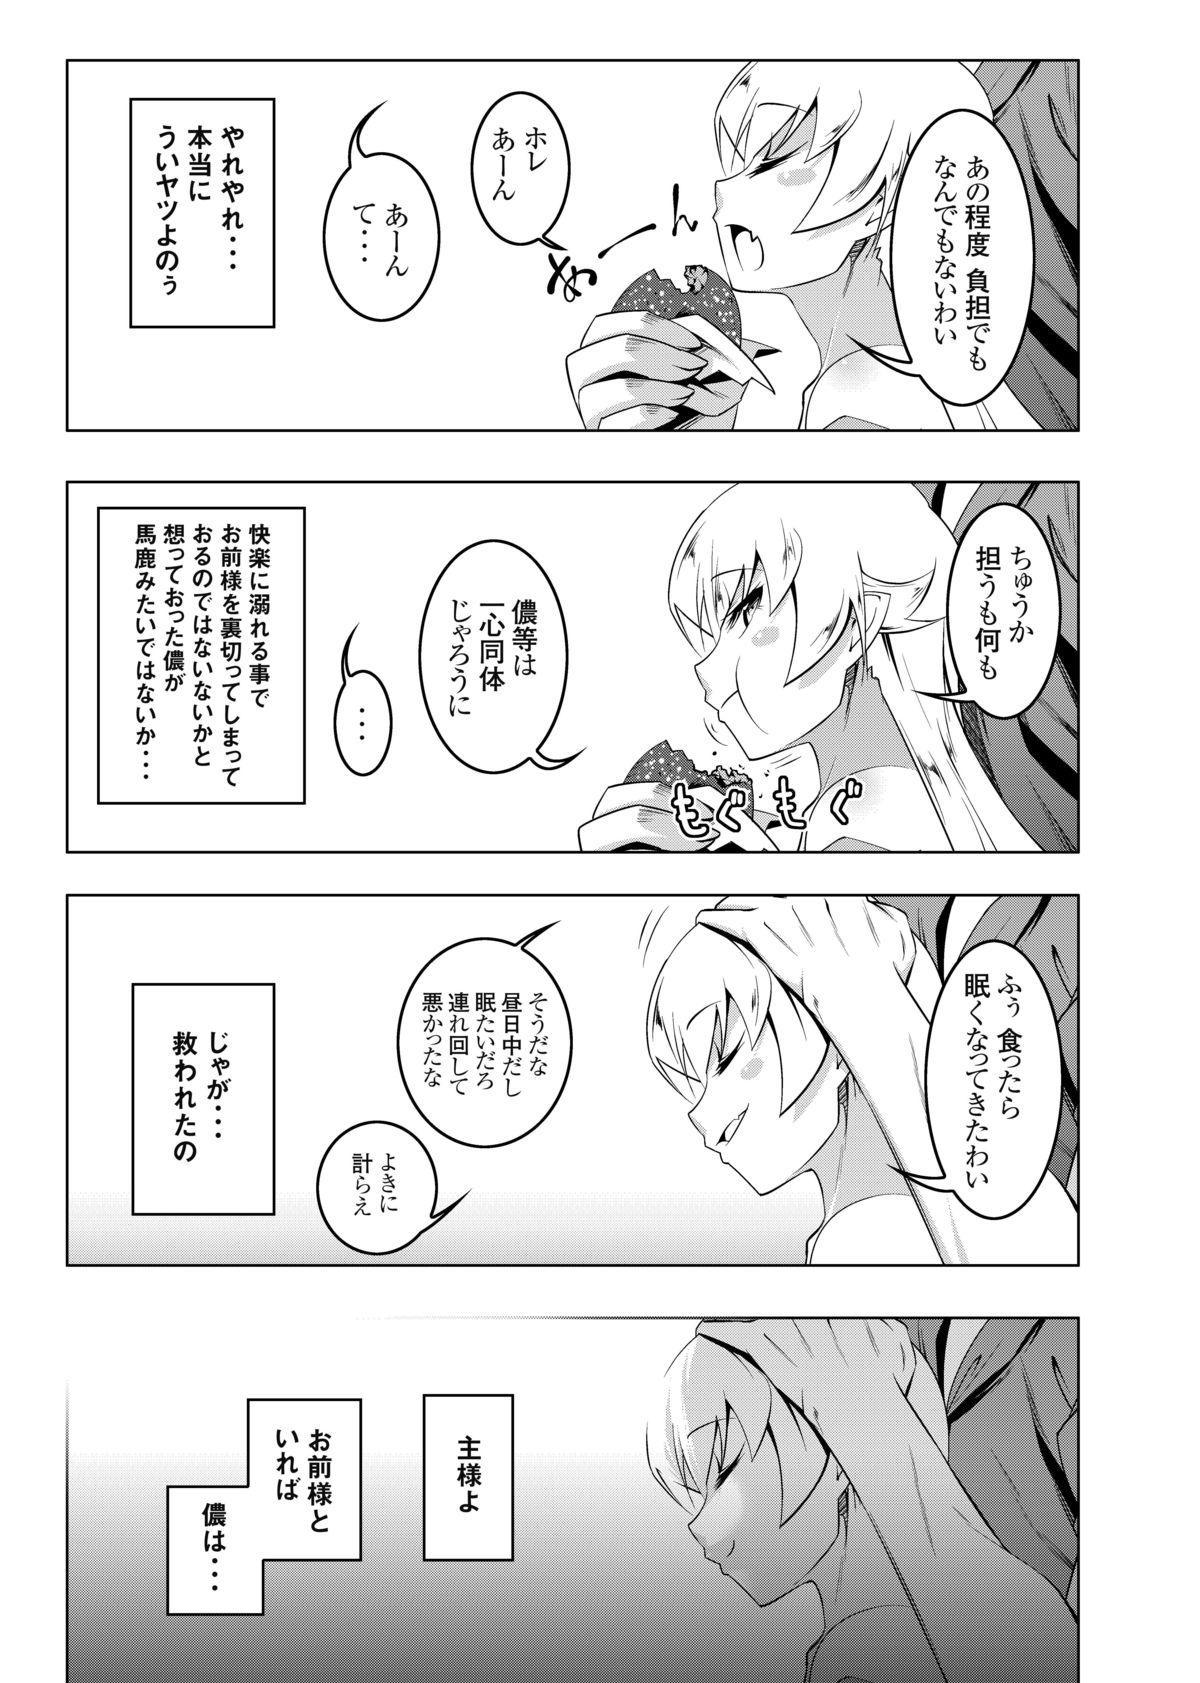 Public Sex Netoraregatari San - Bakemonogatari Slave - Page 7